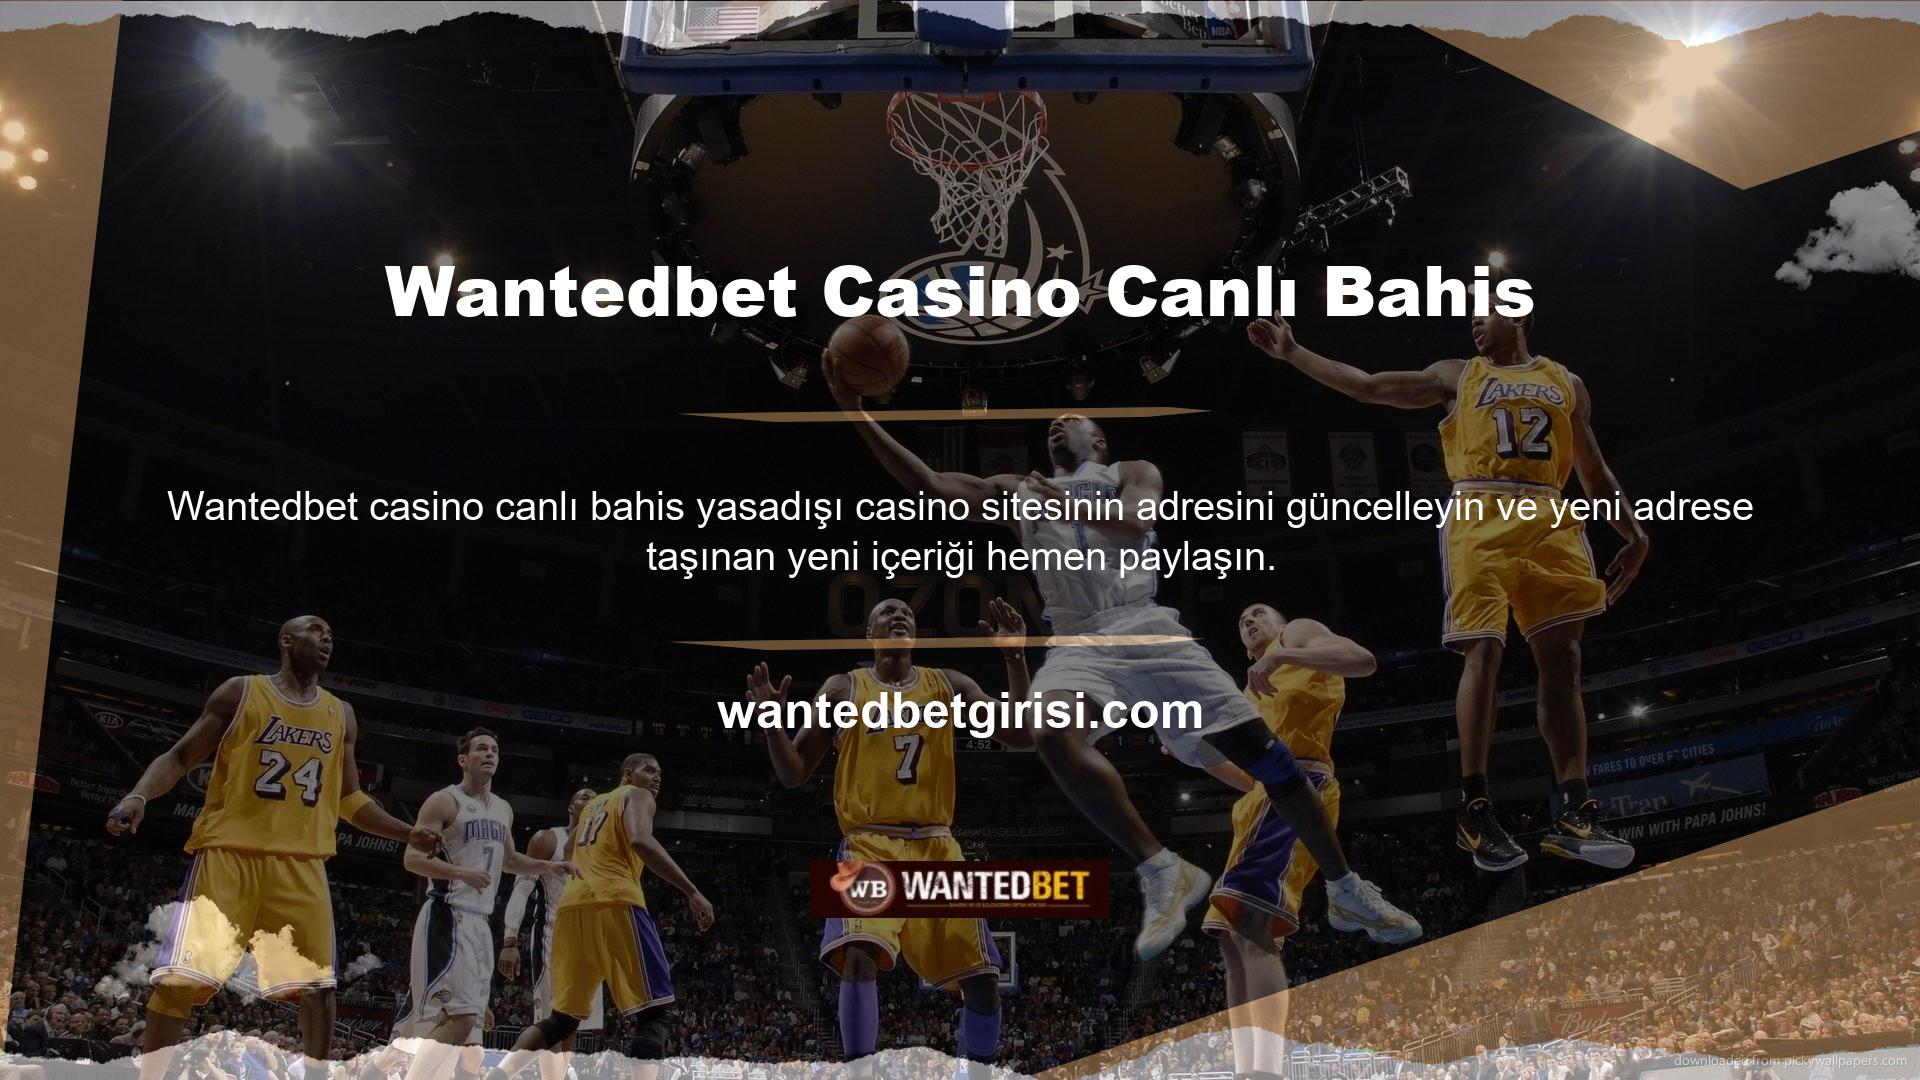 Wantedbet casino canlı bahis için lig ayarları yeni kayıtlı adres olarak onaylanmıştır